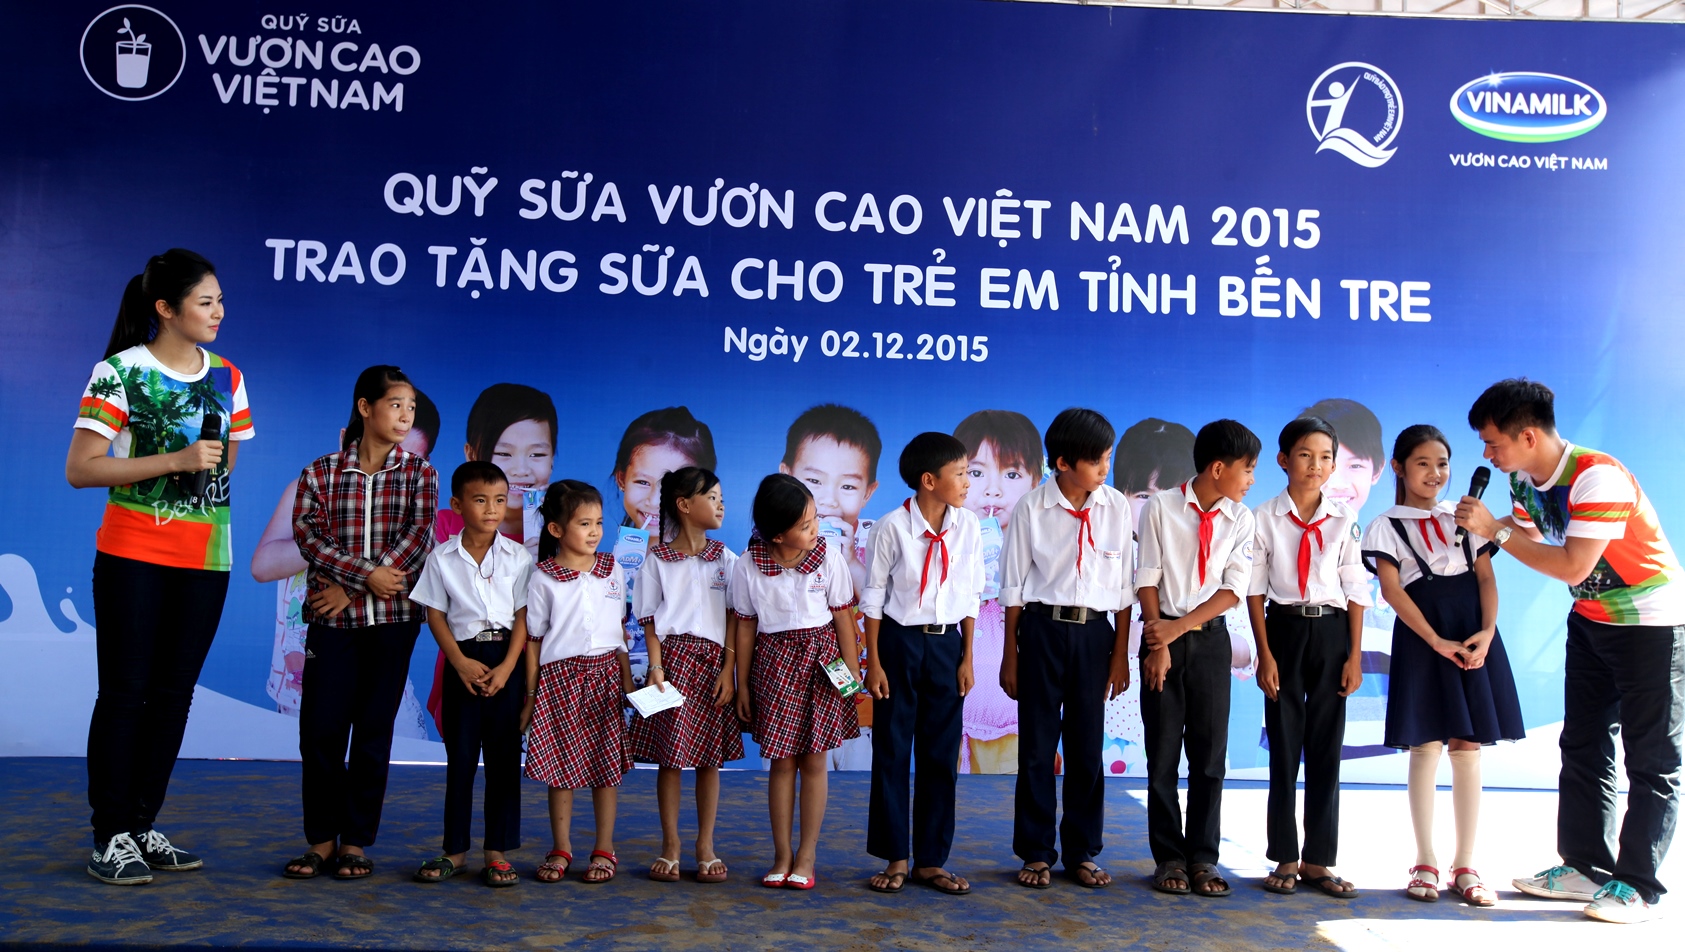 Tại chương trình, các em học sinh đã có cơ hội được gặp mặt, trò chuyện và cùng chơi những trò chơi vui nhộn cùng với các Đại sứ của chương trình Quỹ sữa Vươn cao Việt Nam là Nghệ sỹ hài Xuân Bắc và Hoa hậu Ngọc Hân